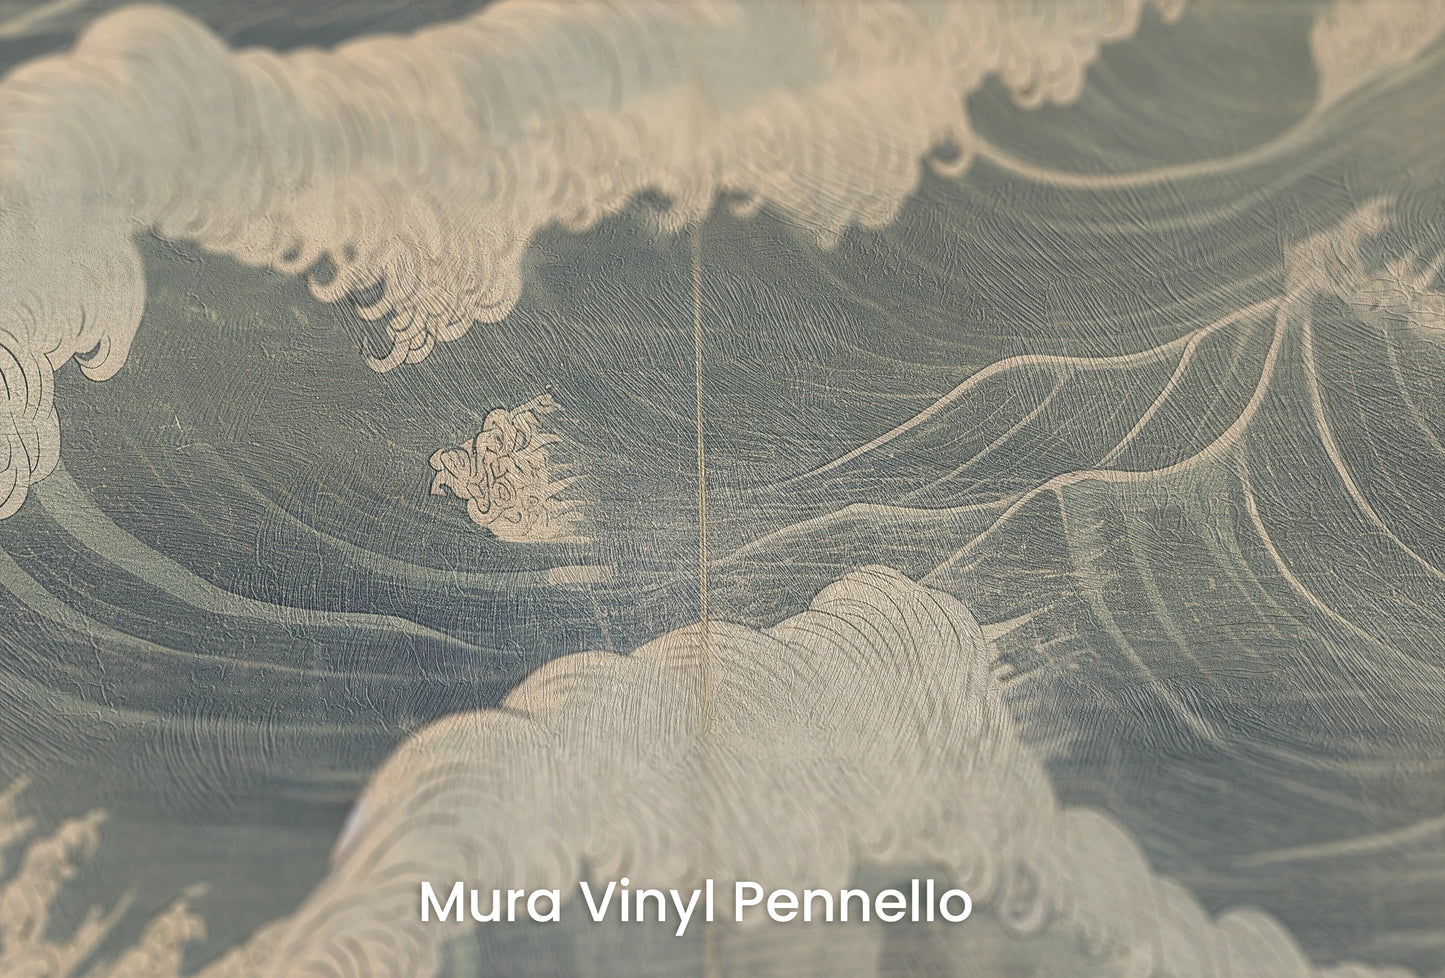 Zbliżenie na artystyczną fototapetę o nazwie Nocturnal Waves na podłożu Mura Vinyl Pennello - faktura pociągnięć pędzla malarskiego.